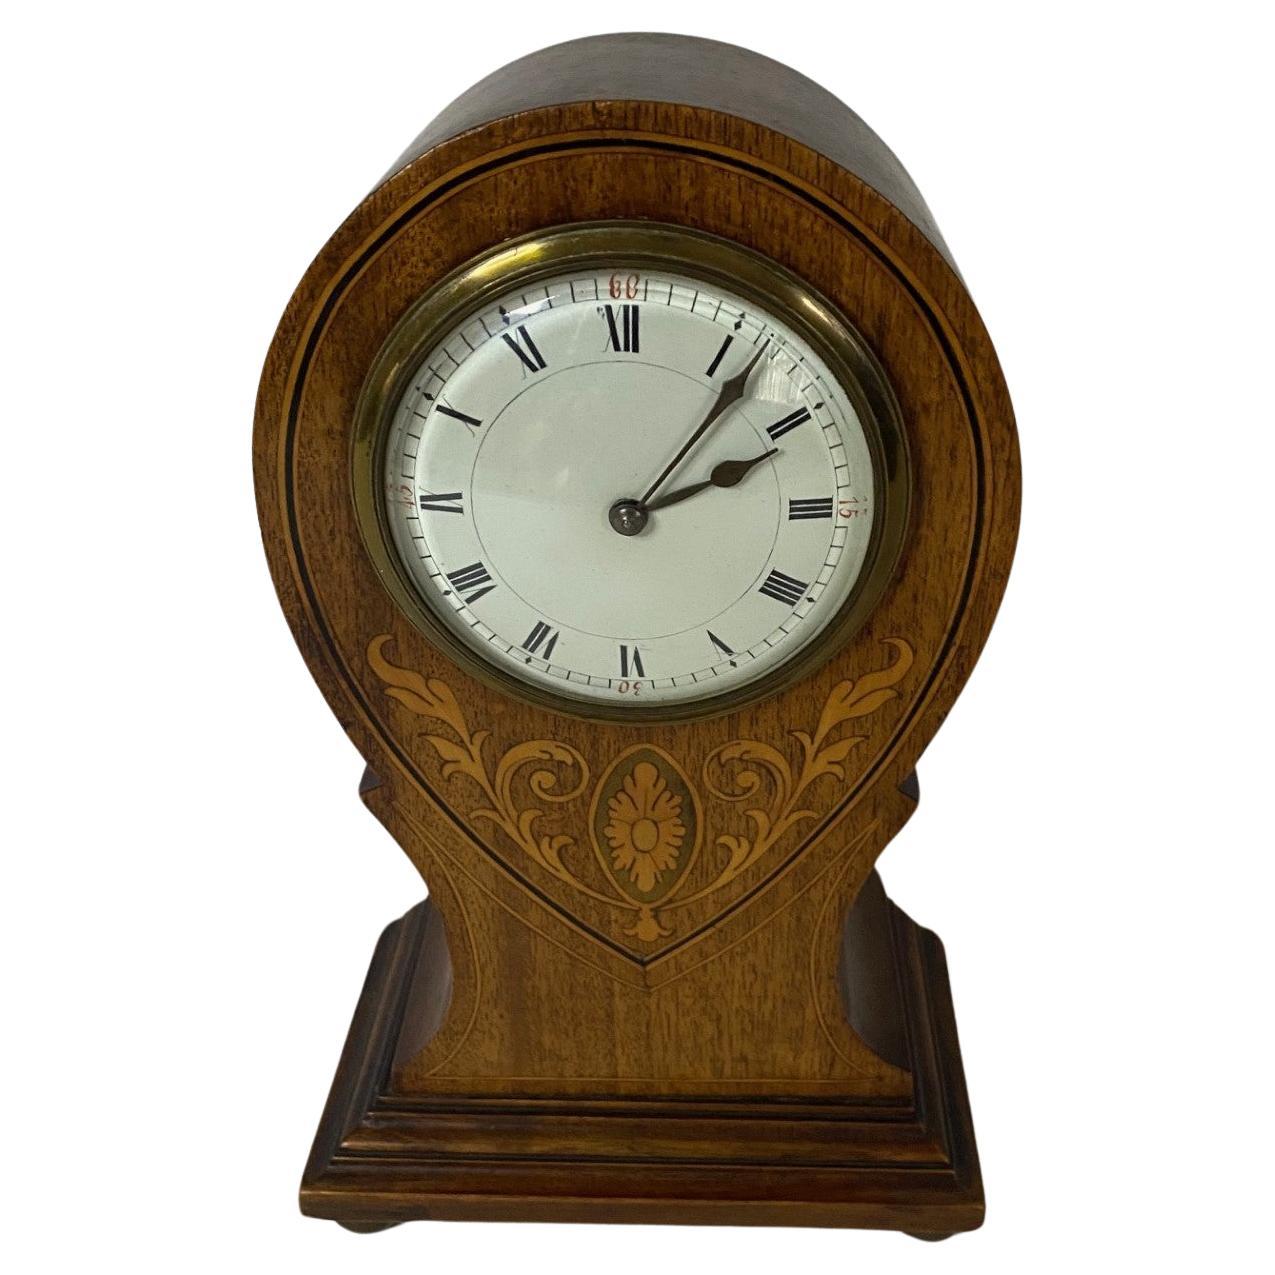 Early 20th Century Mahogany Mantel Clock with Decorative Inlay form England